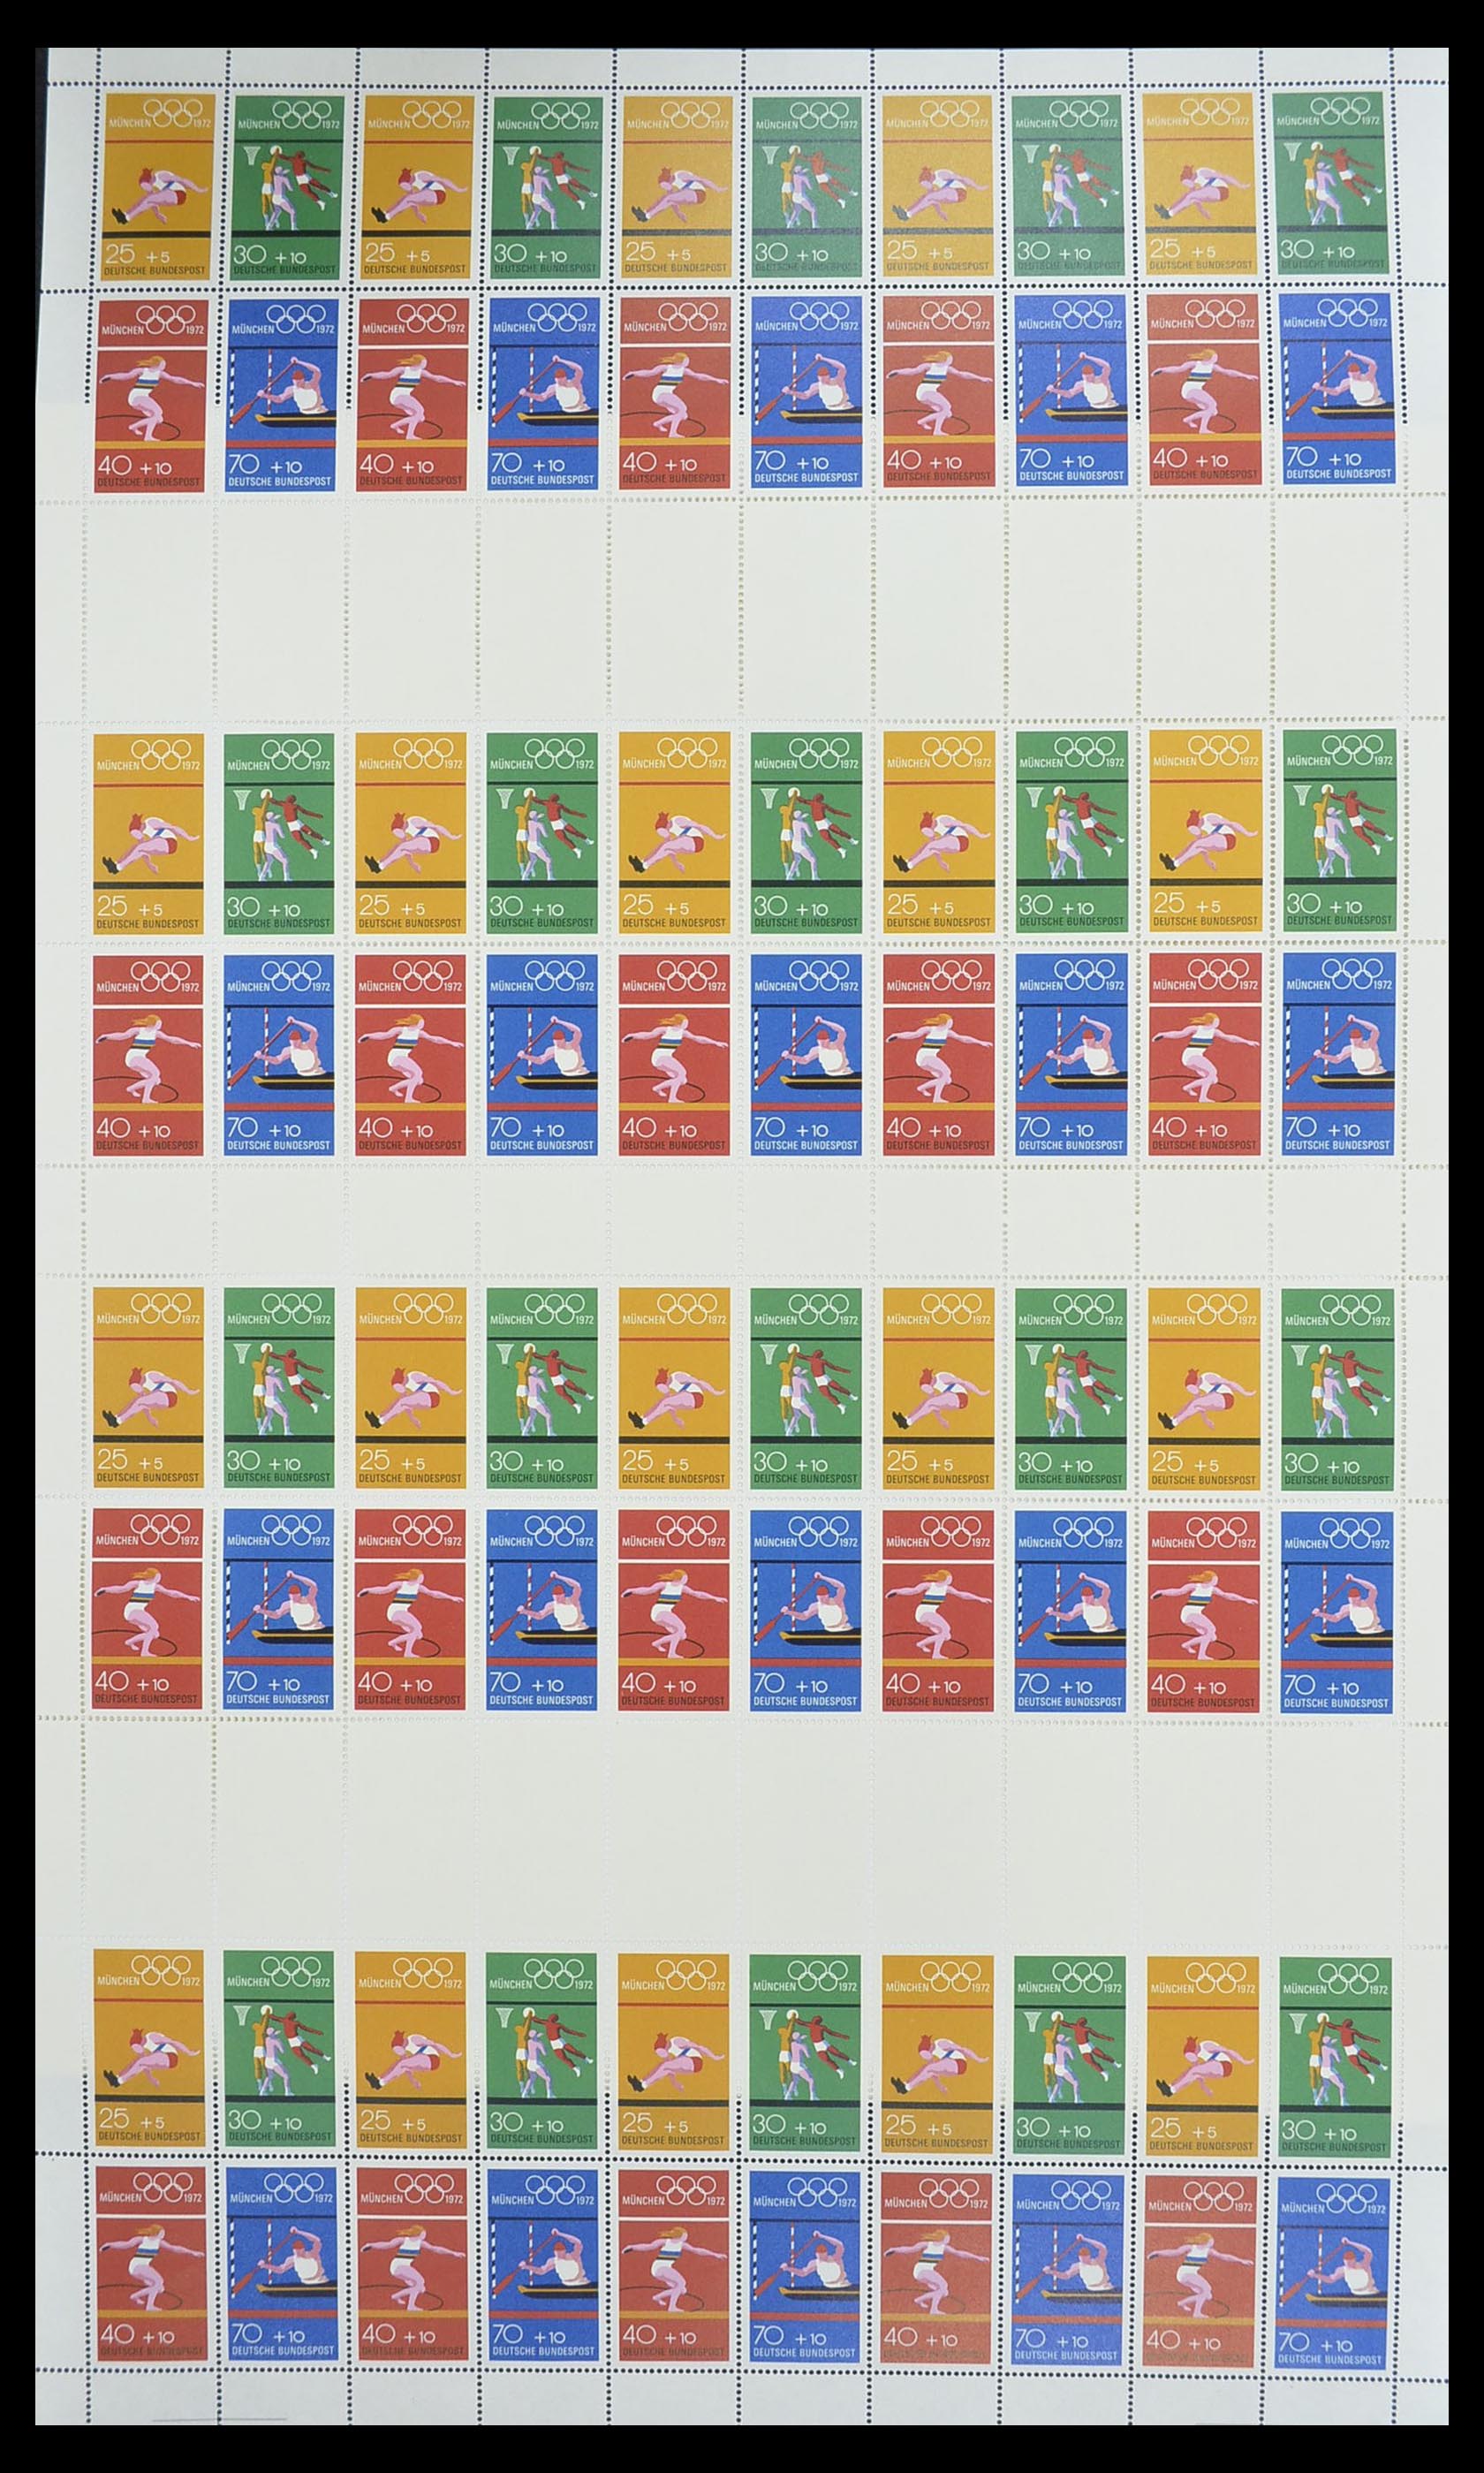 33753 003 - Stamp collection 33753 Bund and Berlin markenheftchenbogen 1966-1973.